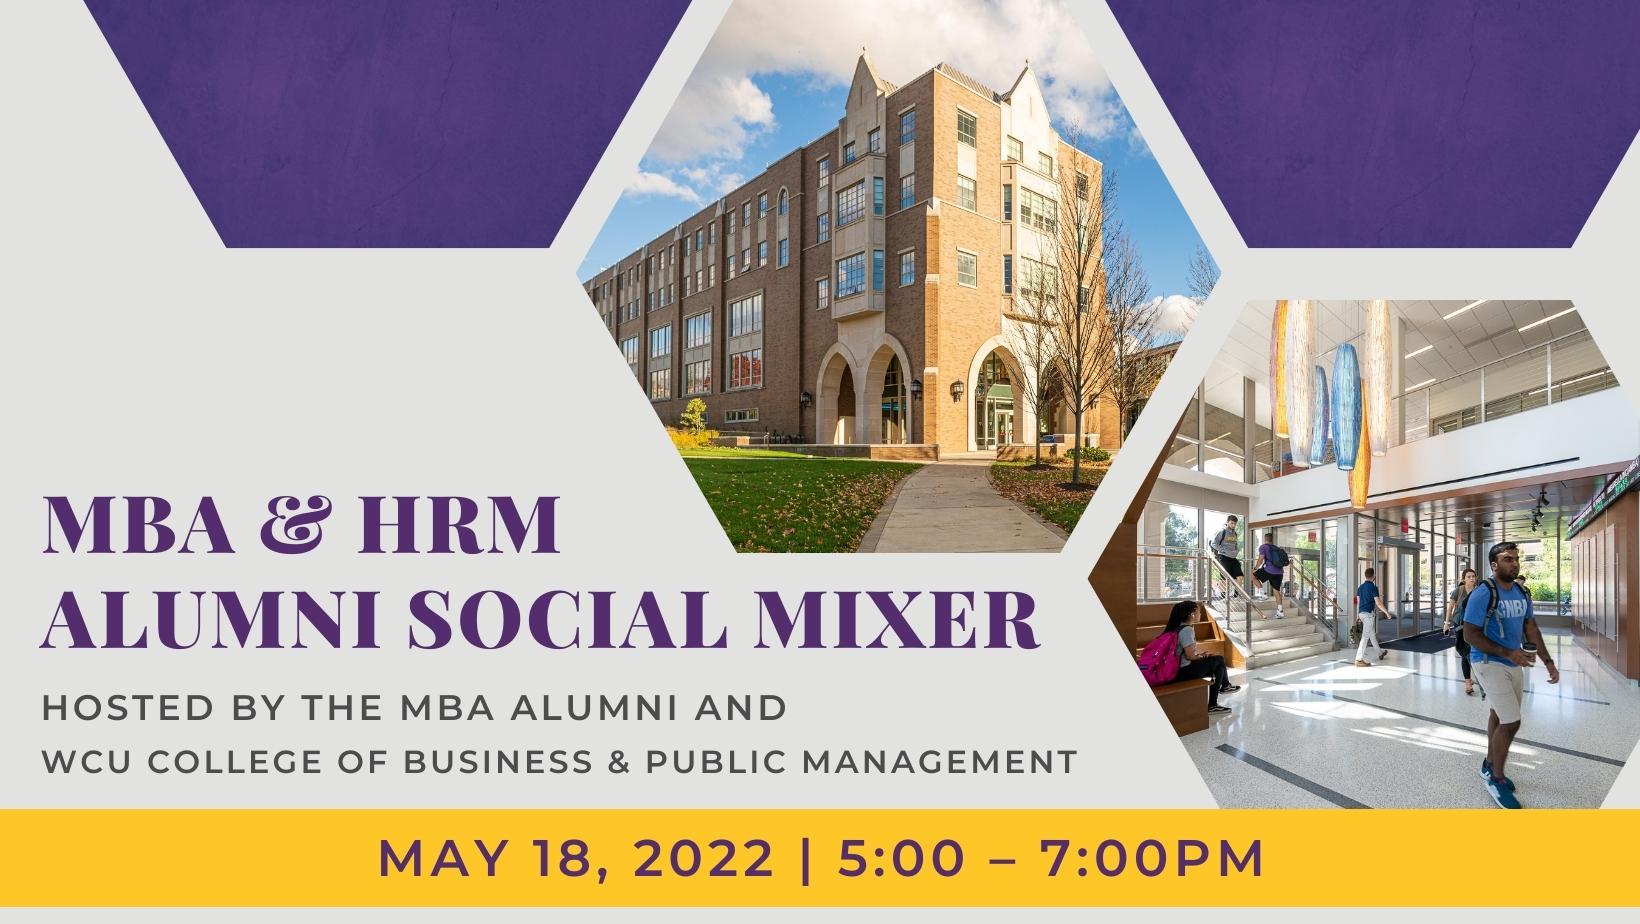 MBA & HRM Alumni Social Mixer event promo